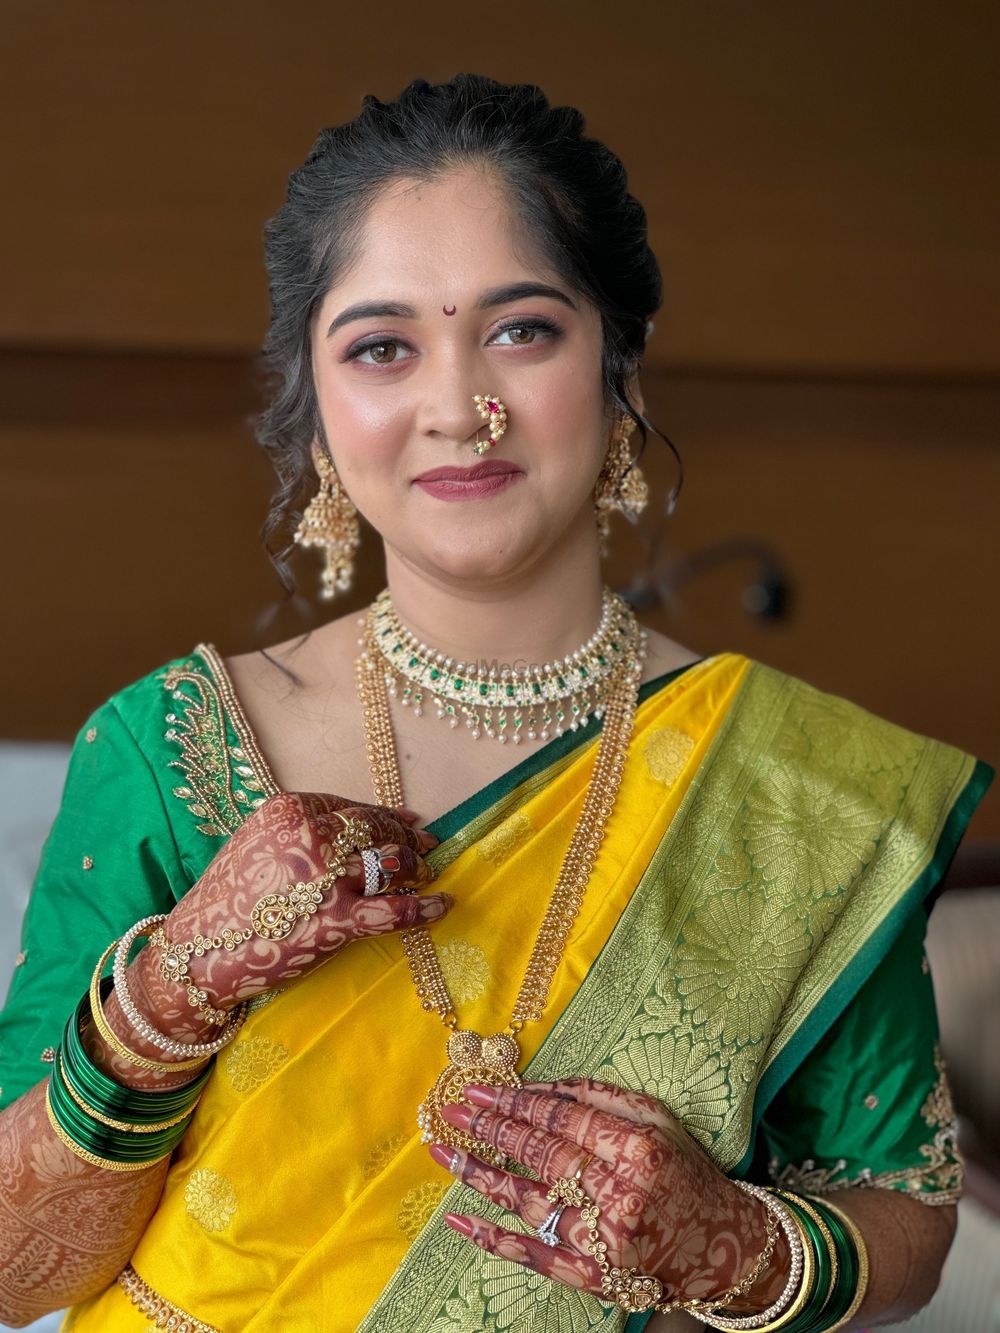 Photo From Maharashtrian bride - By Makeuptalesbymammta